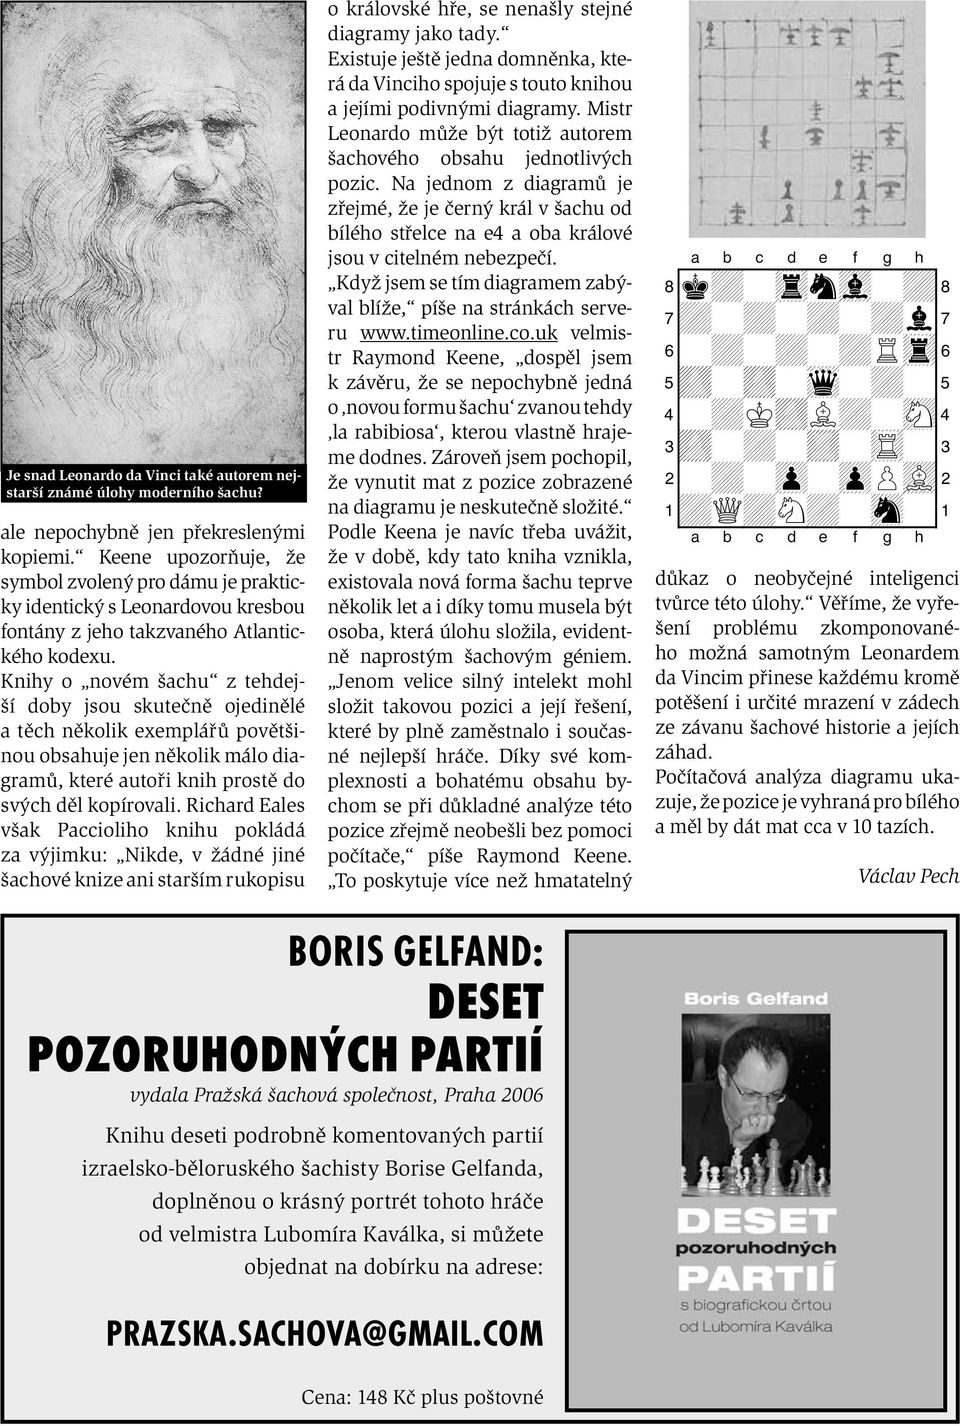 Knihy o novém šachu z tehdejší doby jsou skutečně ojedinělé a těch několik exemplářů povětšinou obsahuje jen několik málo diagramů, které autoři knih prostě do svých děl kopírovali.